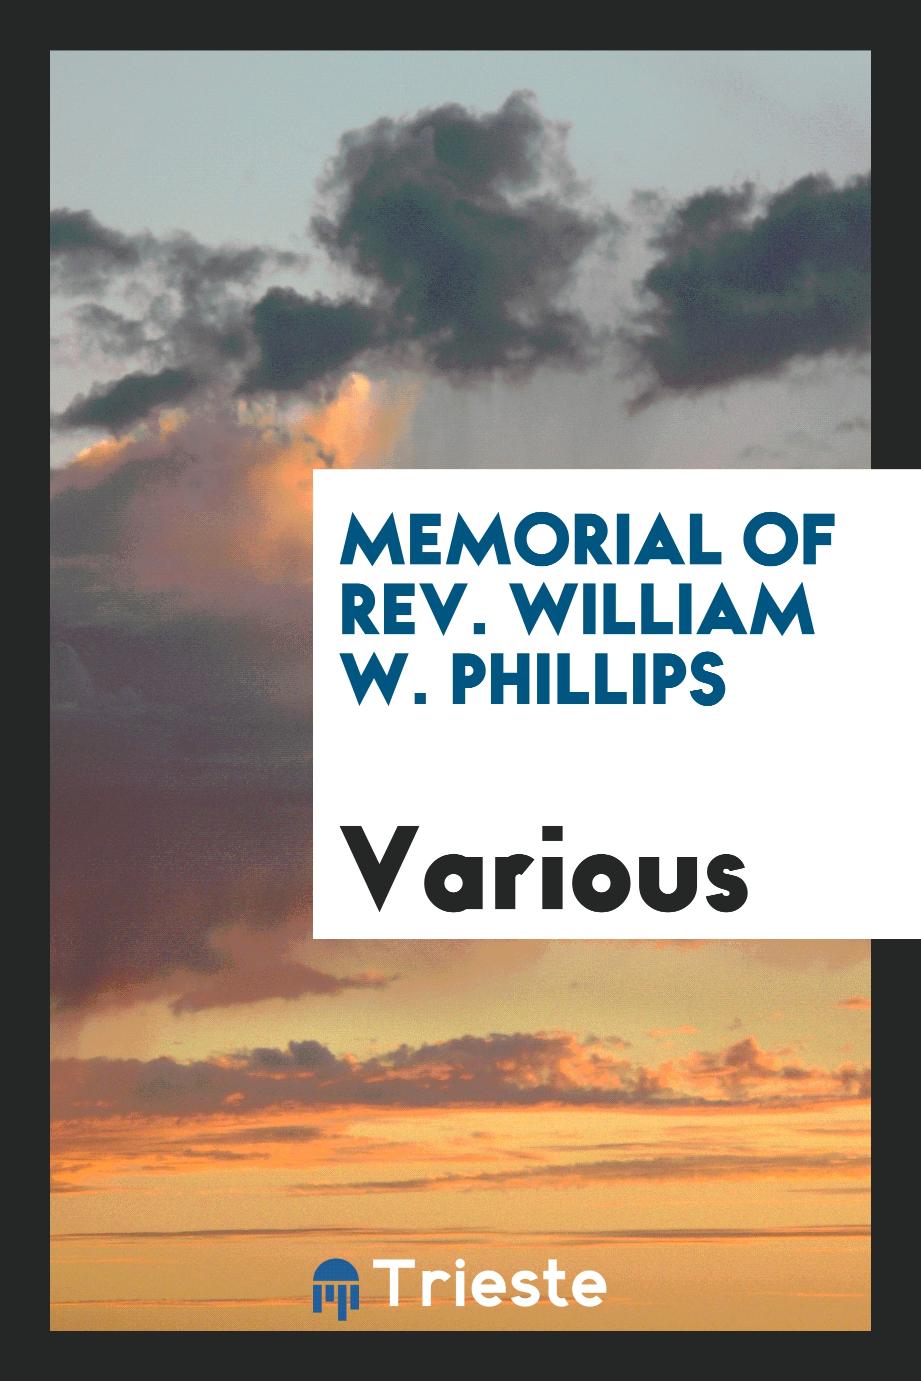 Memorial of Rev. William W. Phillips